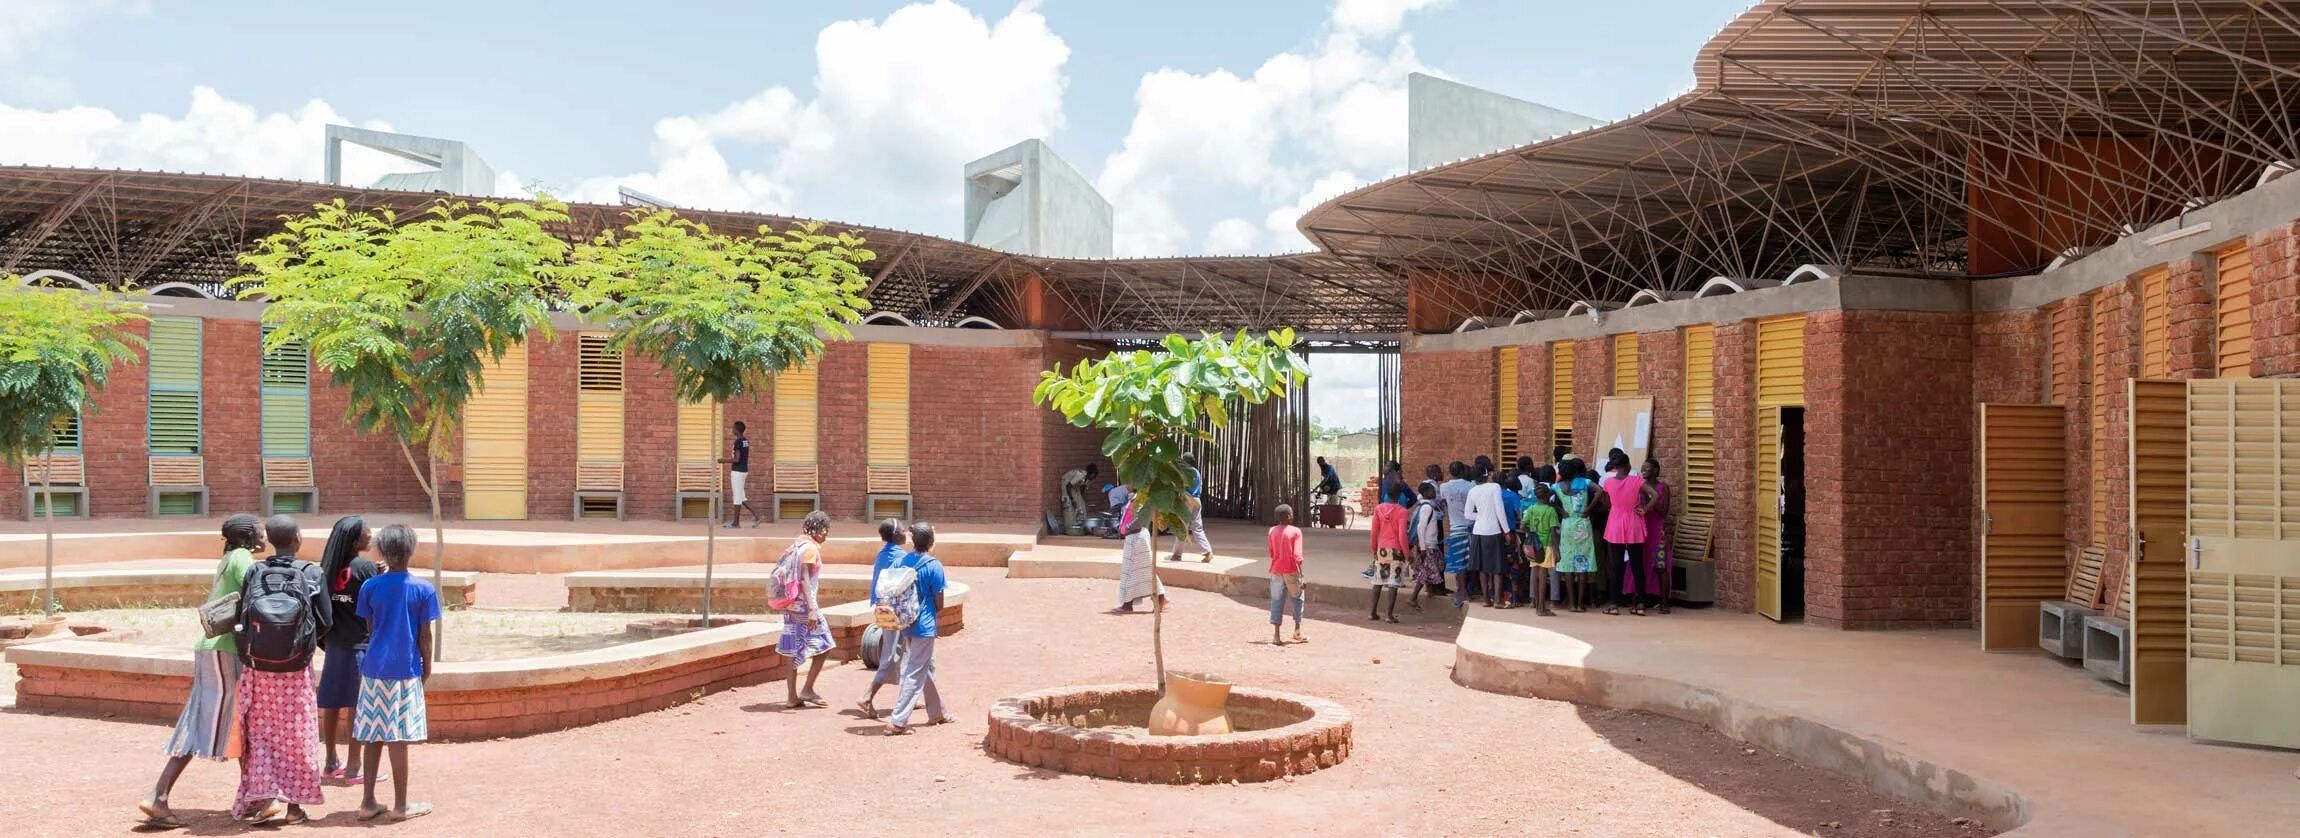 Франсис кере школа. Франсис кере Архитектор. Самые необычные школы в мире. Building africa